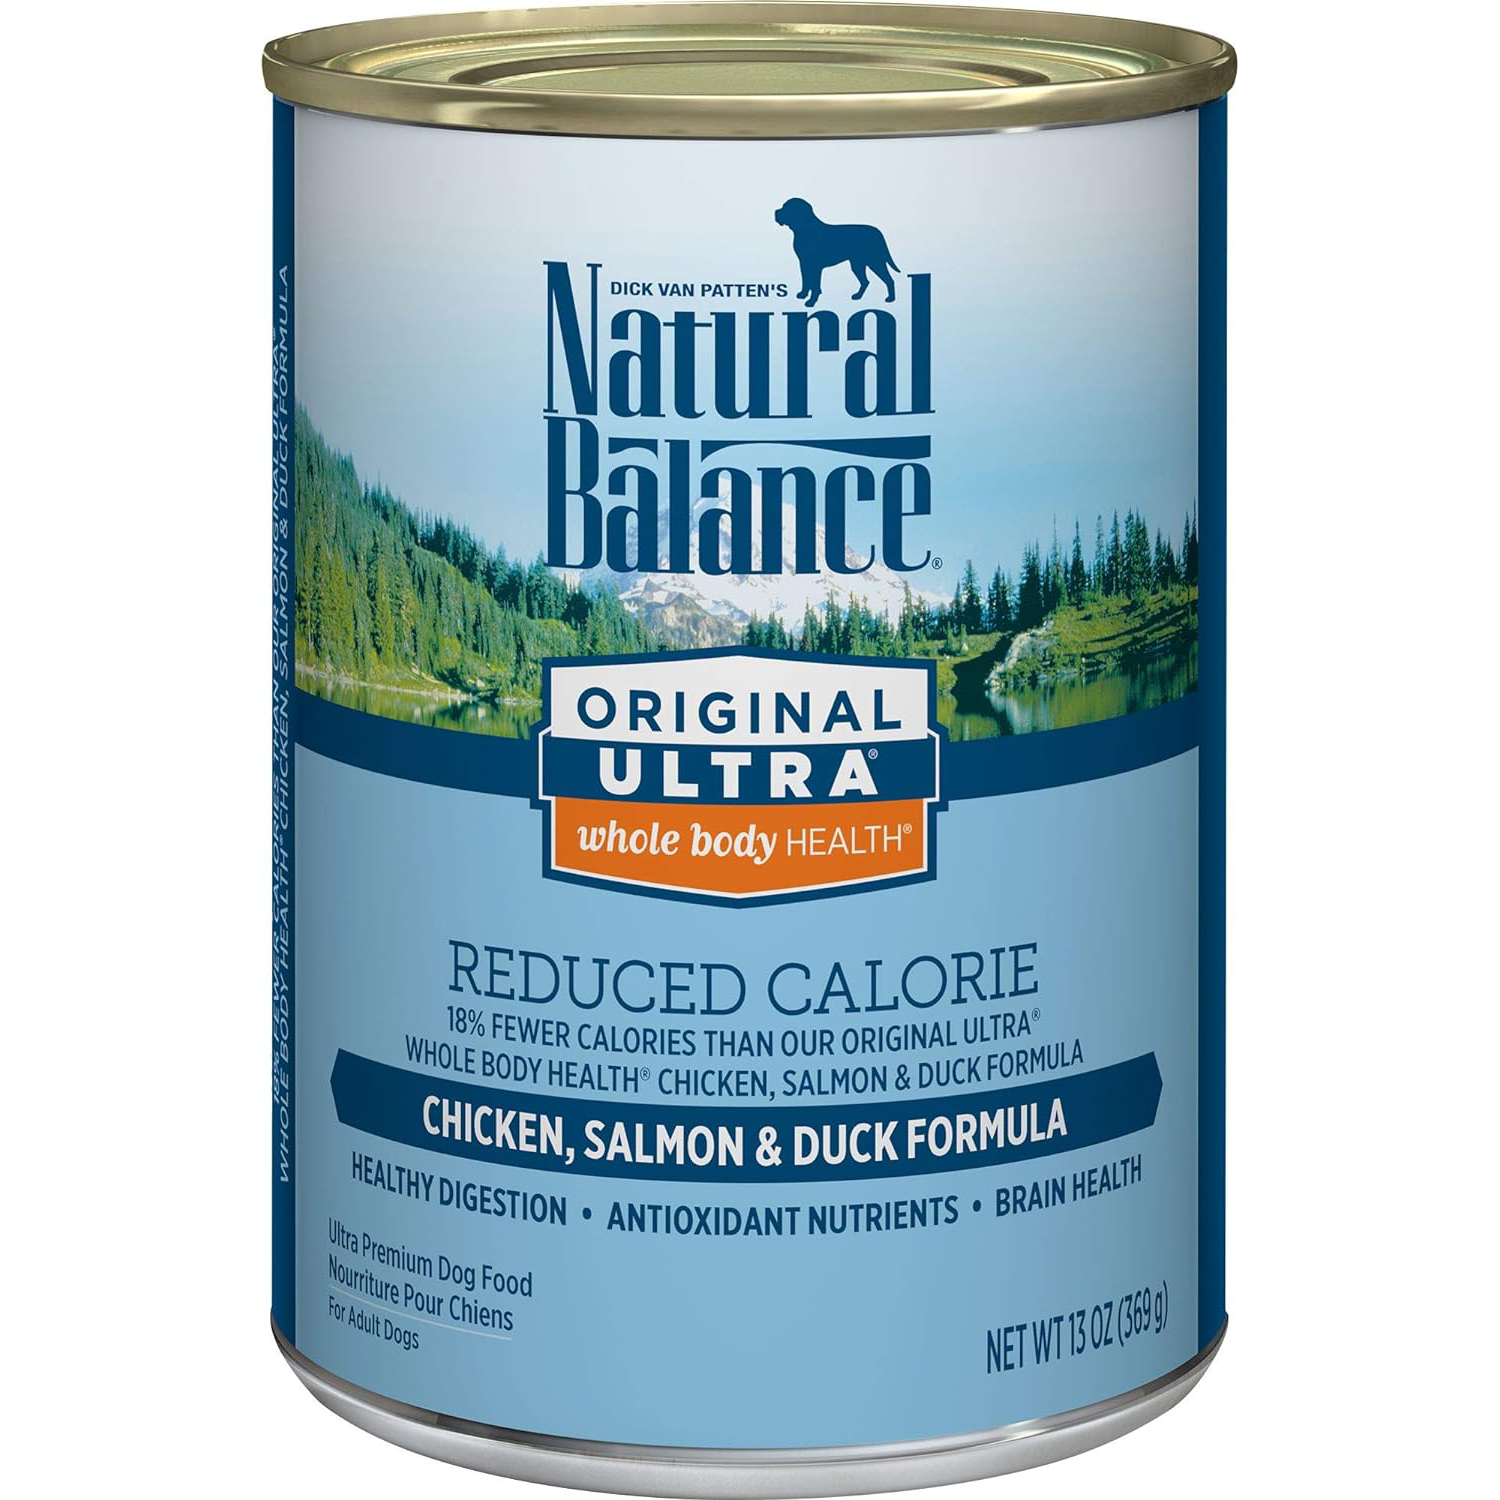 Natural Balance Original Ultra Reduced-Calorie Formula